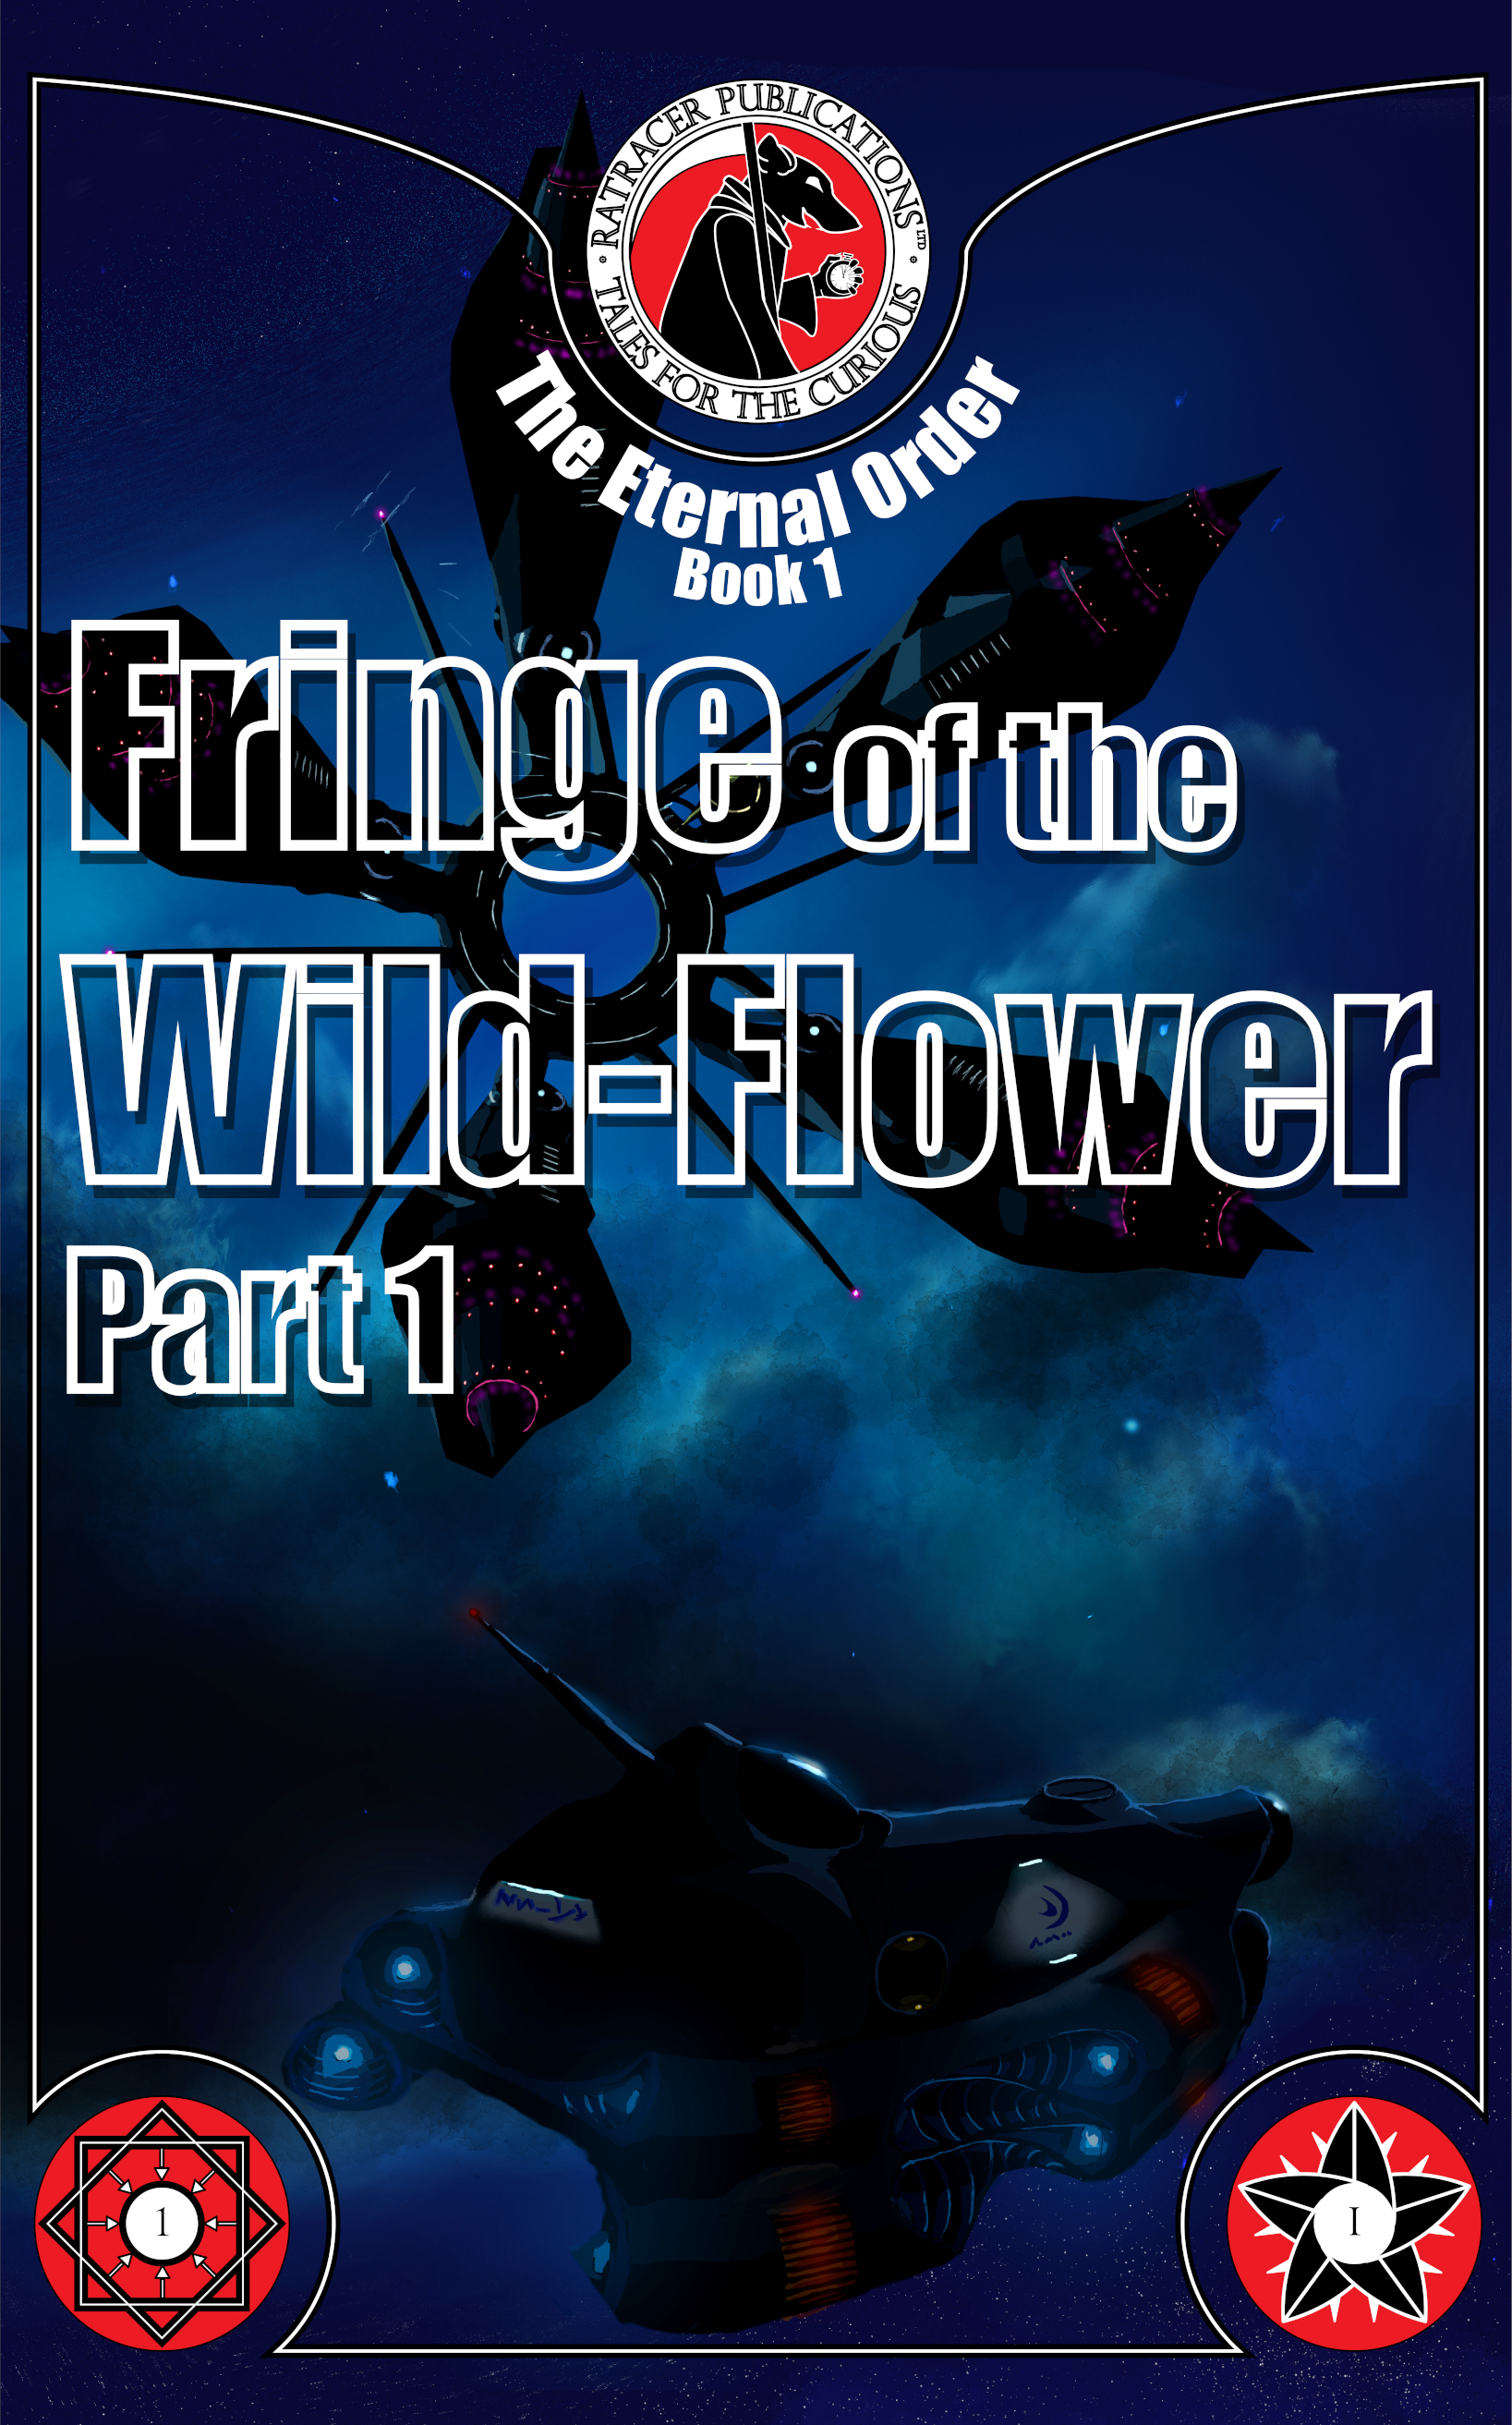 Fringe of the Wild-Flower part 1